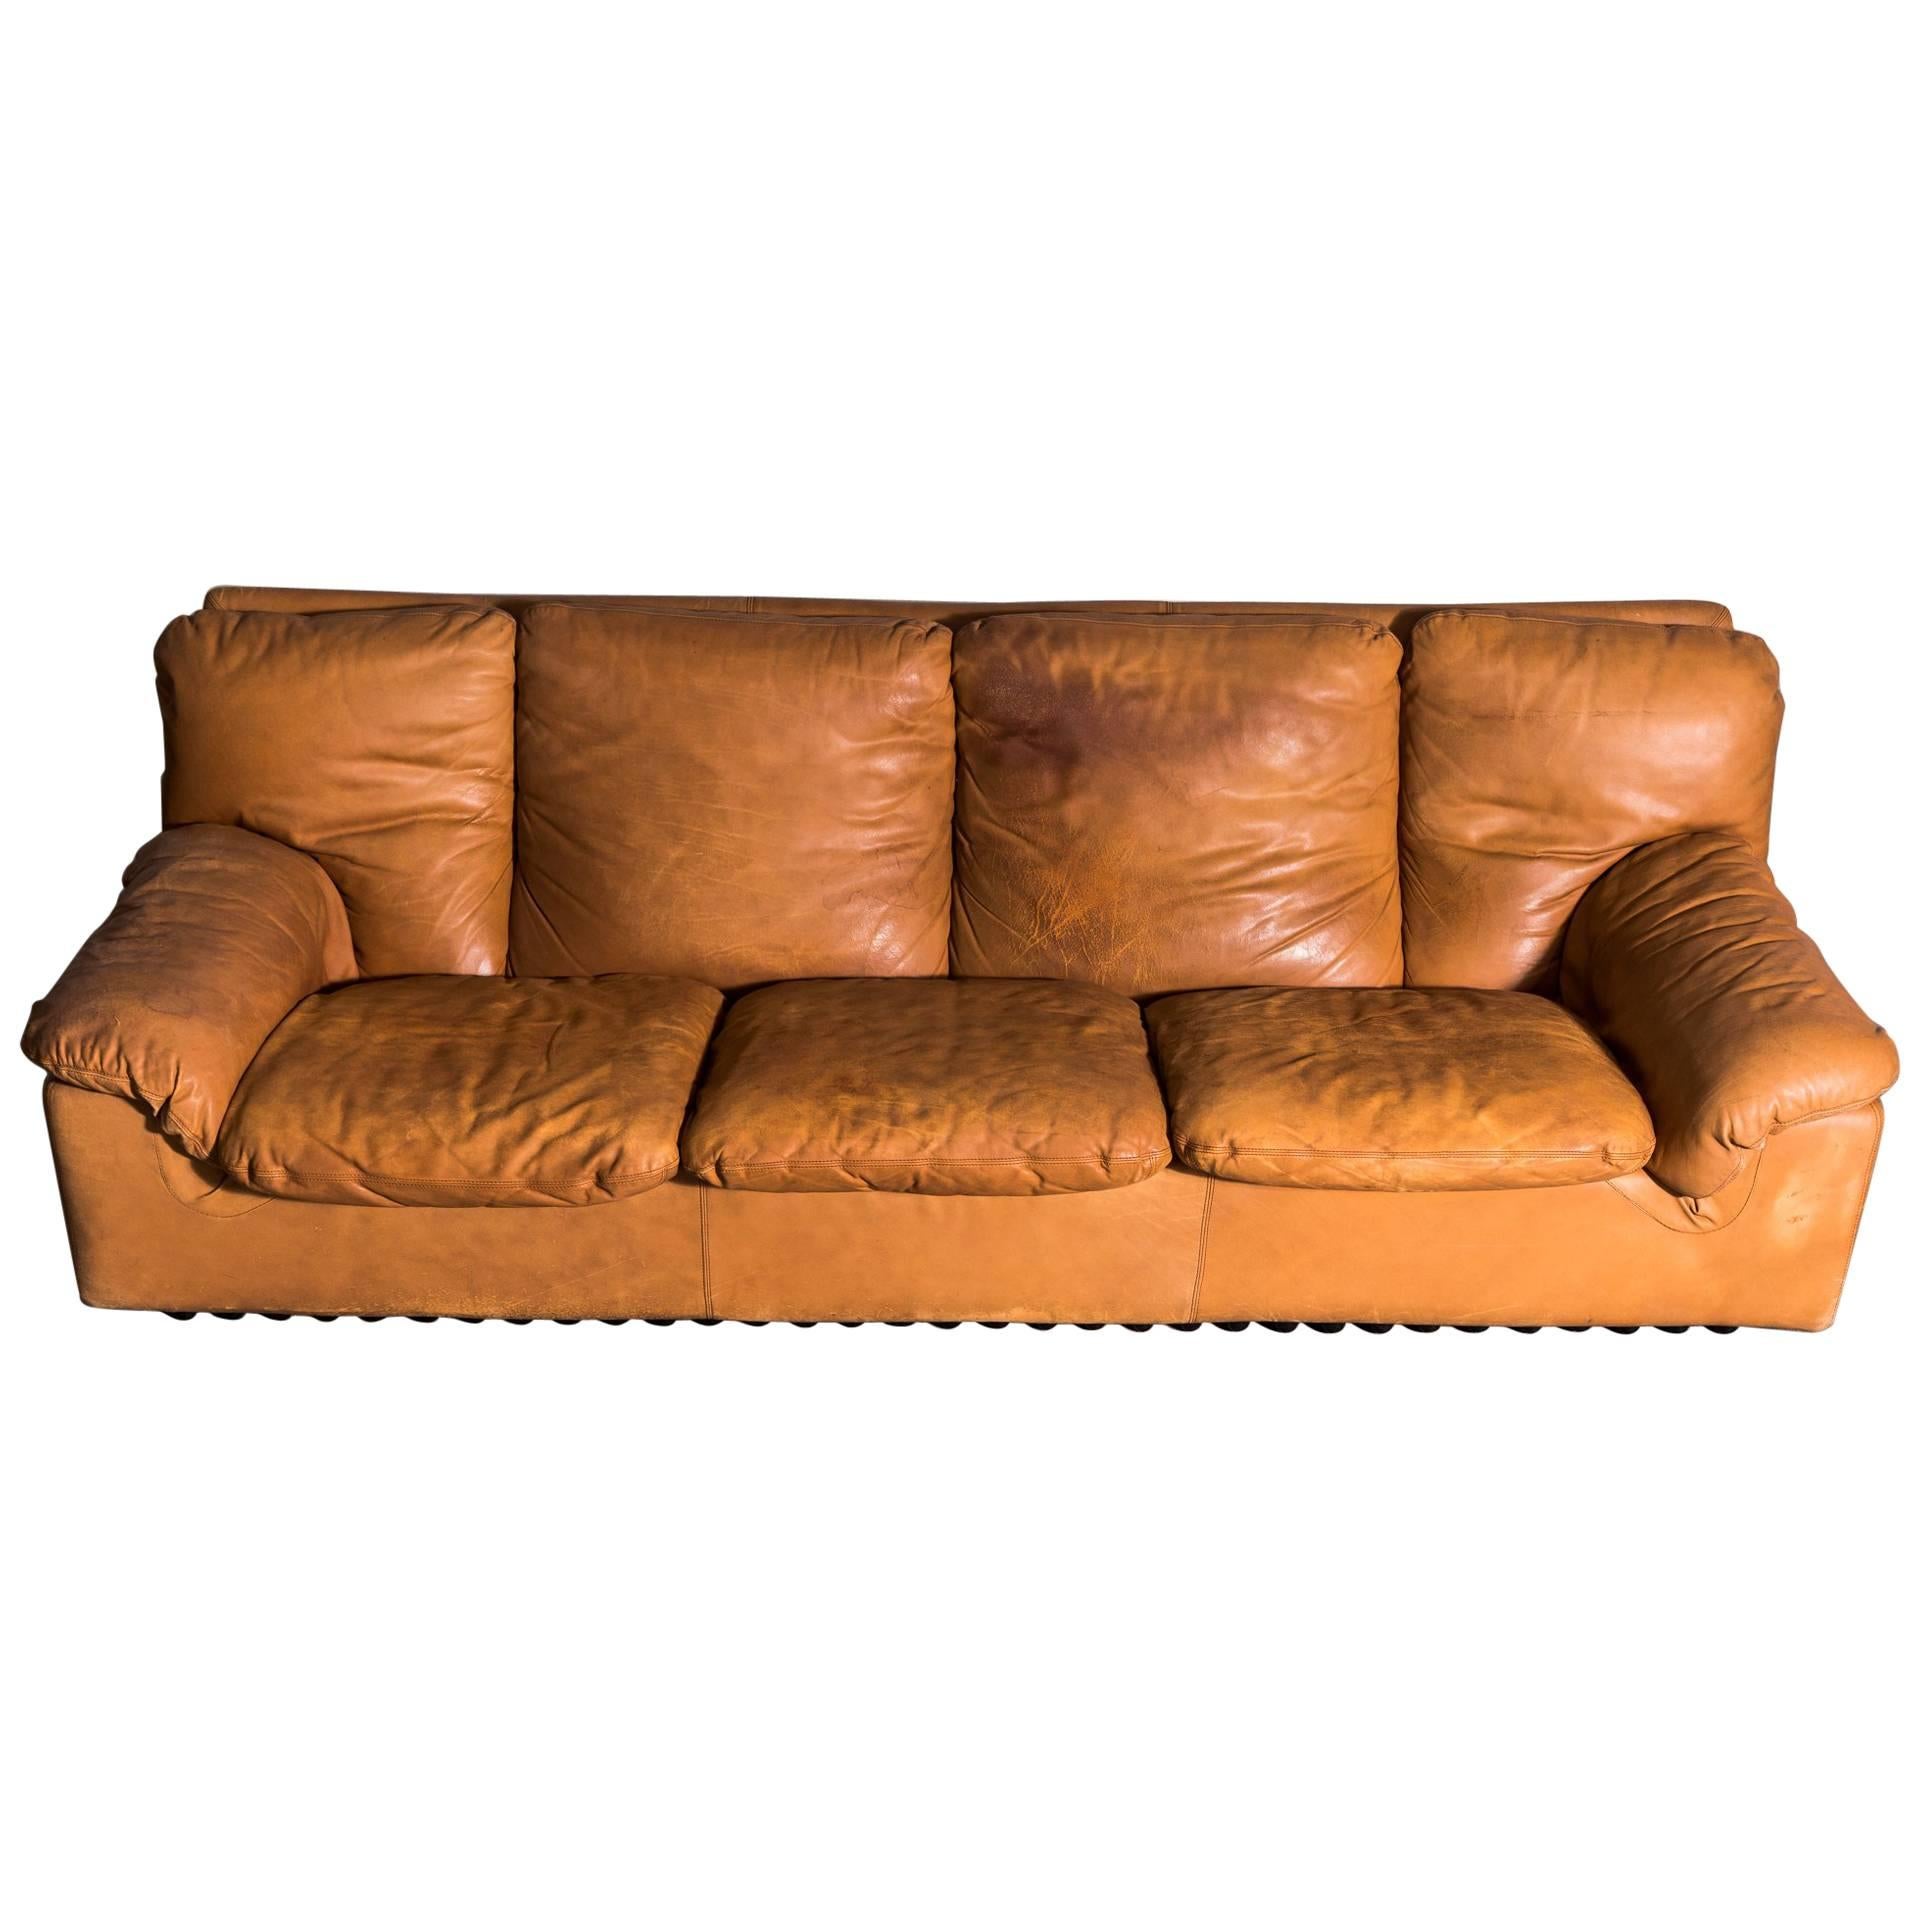 Midcentury Tan leather Bonheur Sofa by T. Ammannati & G.P.Vitellii